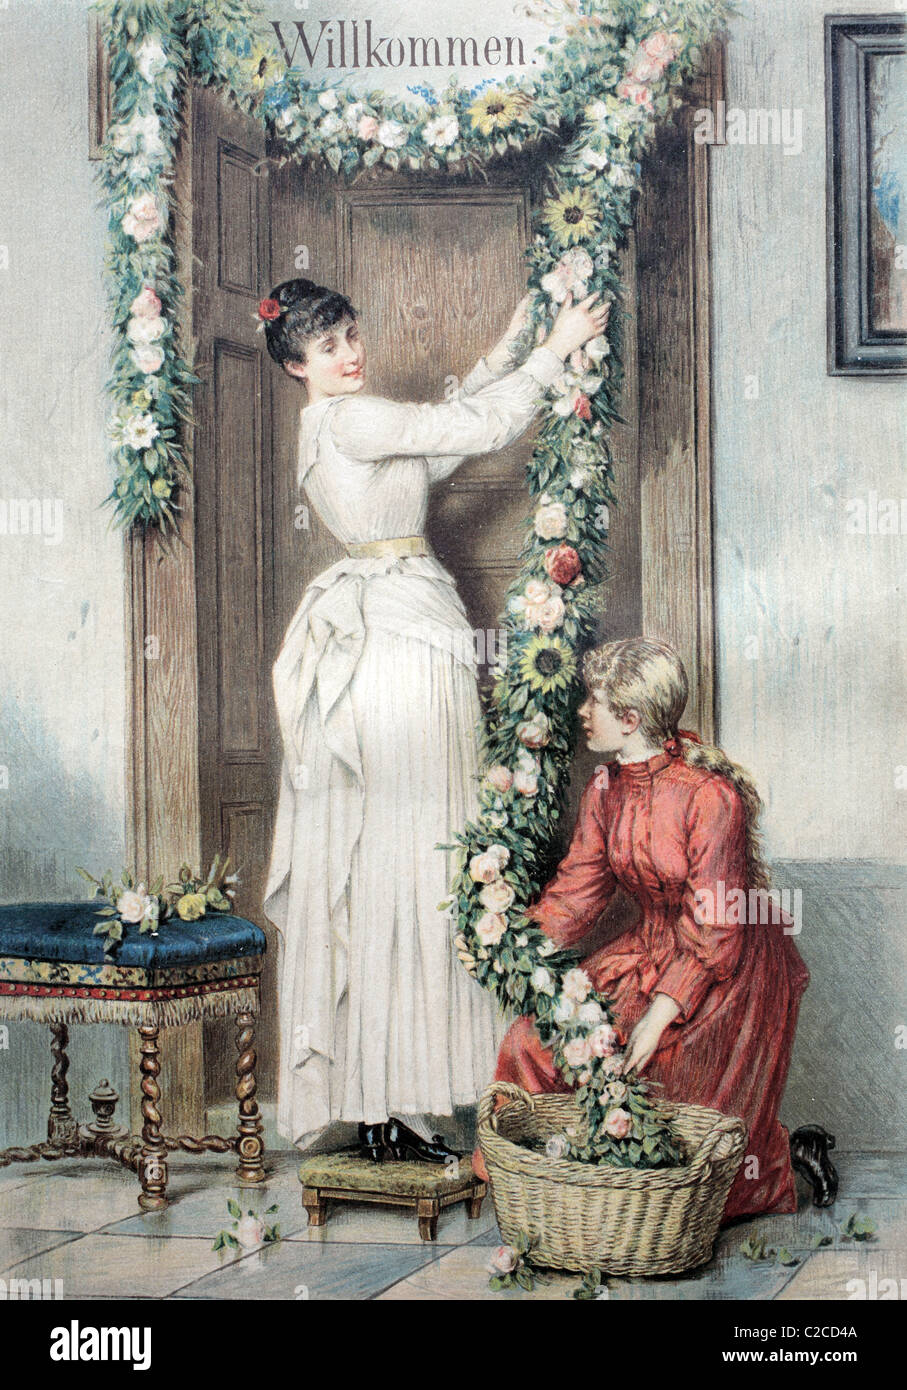 Décoration de bienvenue sont suspendus au-dessus d'une porte, illustration historique vers 1893 Banque D'Images